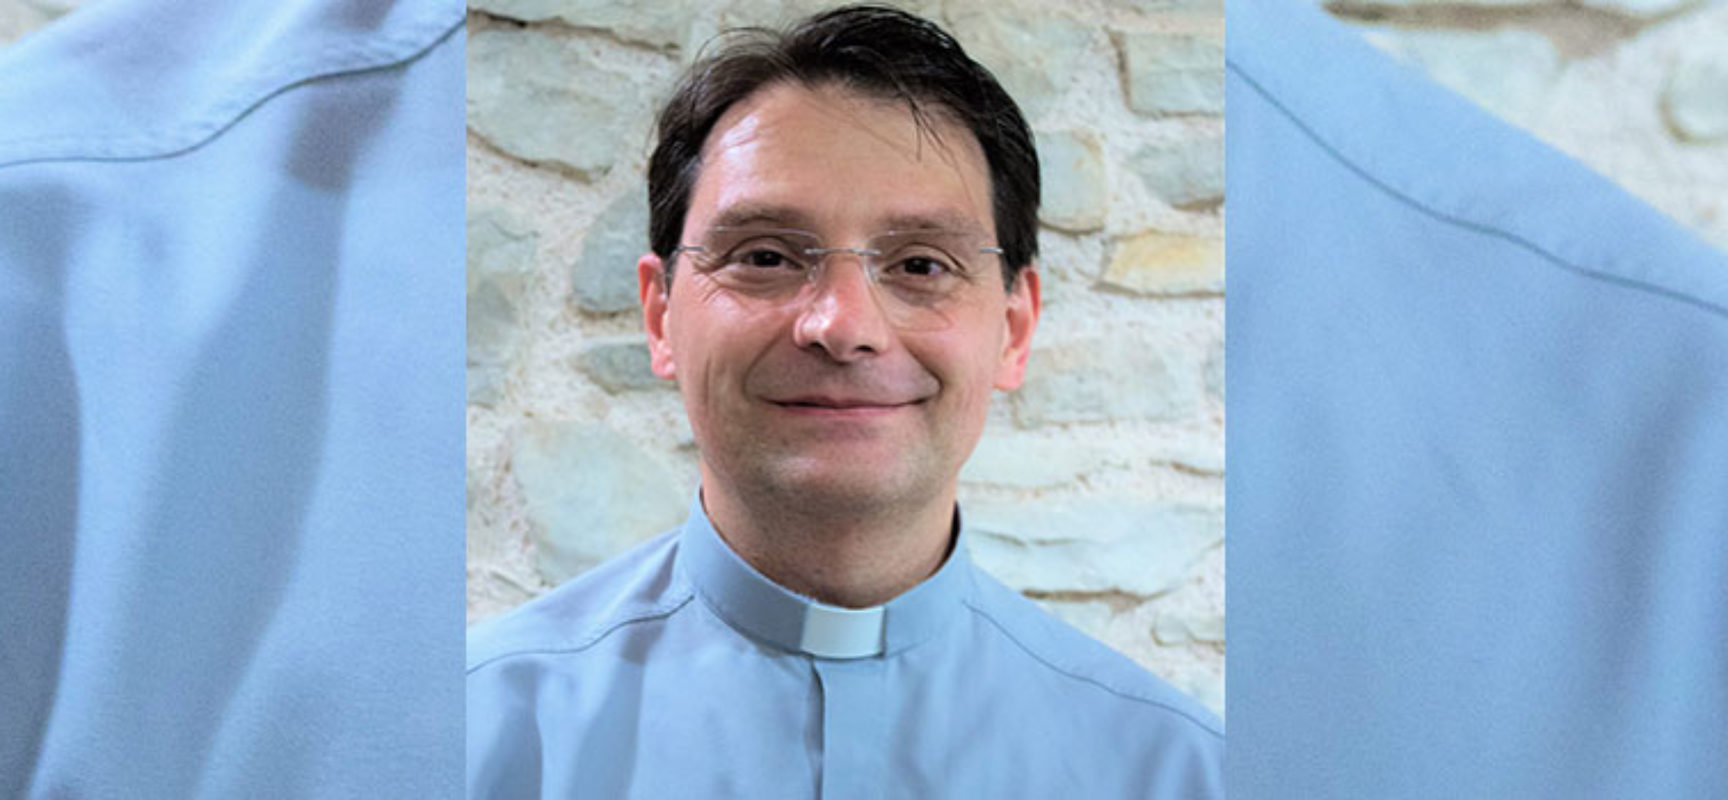 Don Sergio Pellegrini nuovo Vicario Generale Arcidiocesi: “Accolgo tutto come un segno”